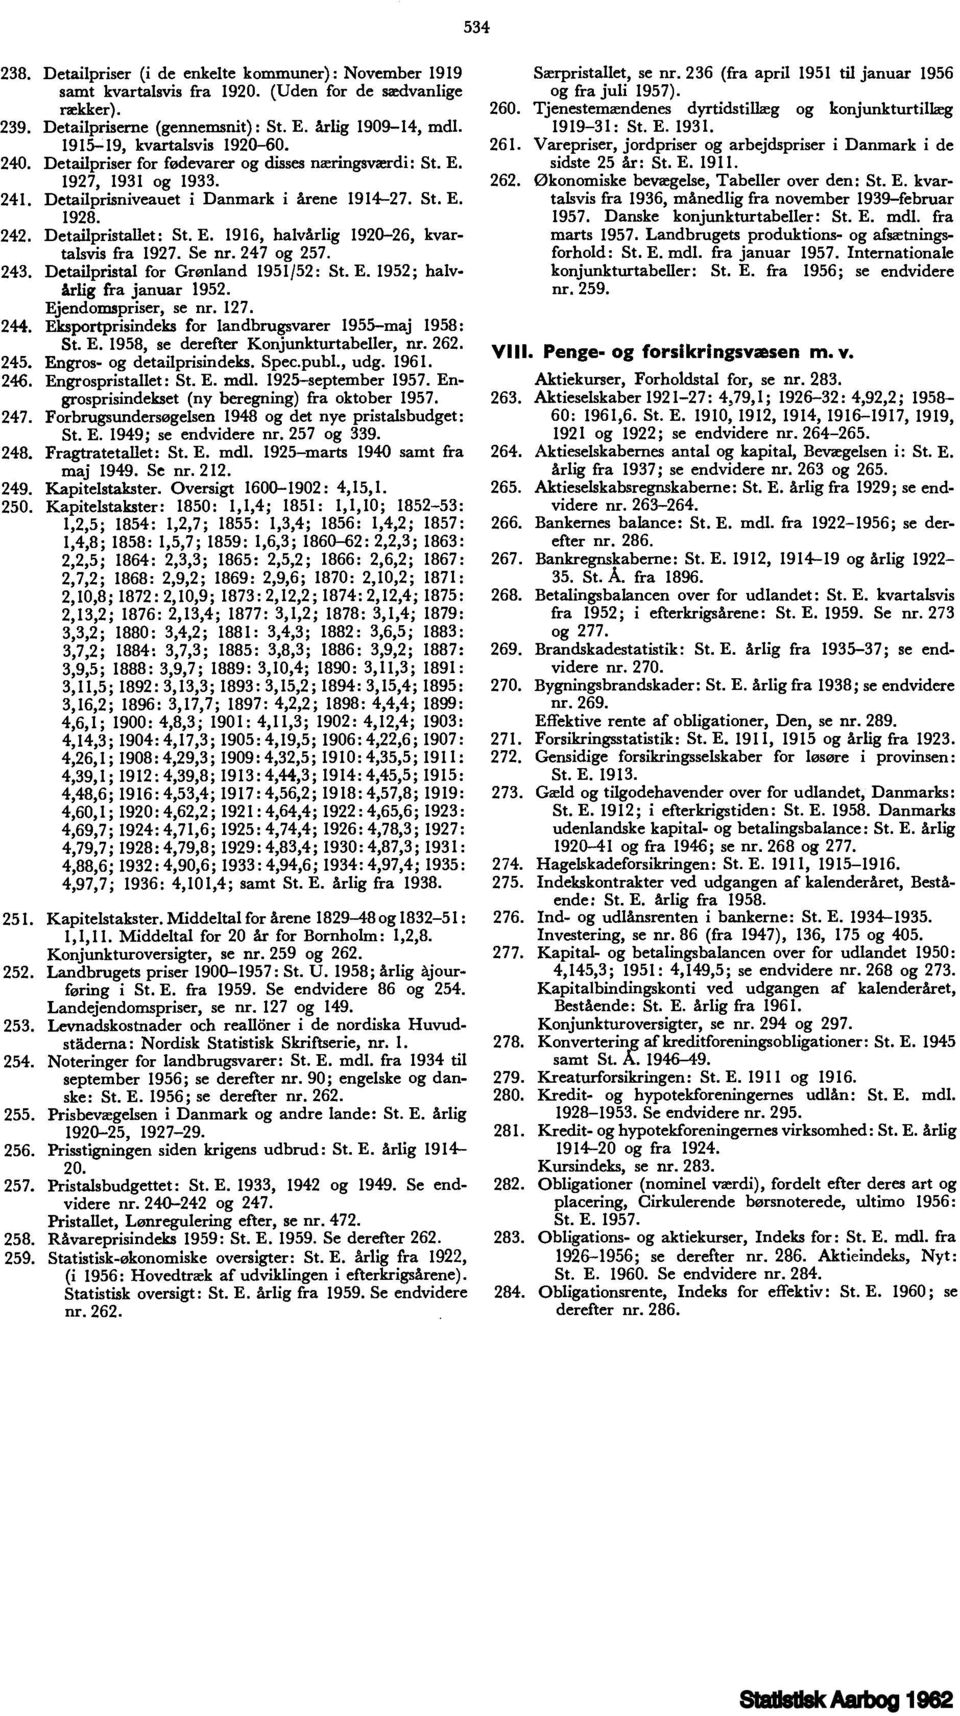 Detailpristallet: St. E. 1916, halvårlig 1920-26, kvartalsvis fra 1927. Se nr. 247 og 257. 243. Detailpristal for Grønland 195152: St. E. 1952; halvårlig fra januar 1952. Ejendomspriser, se nr. 127.